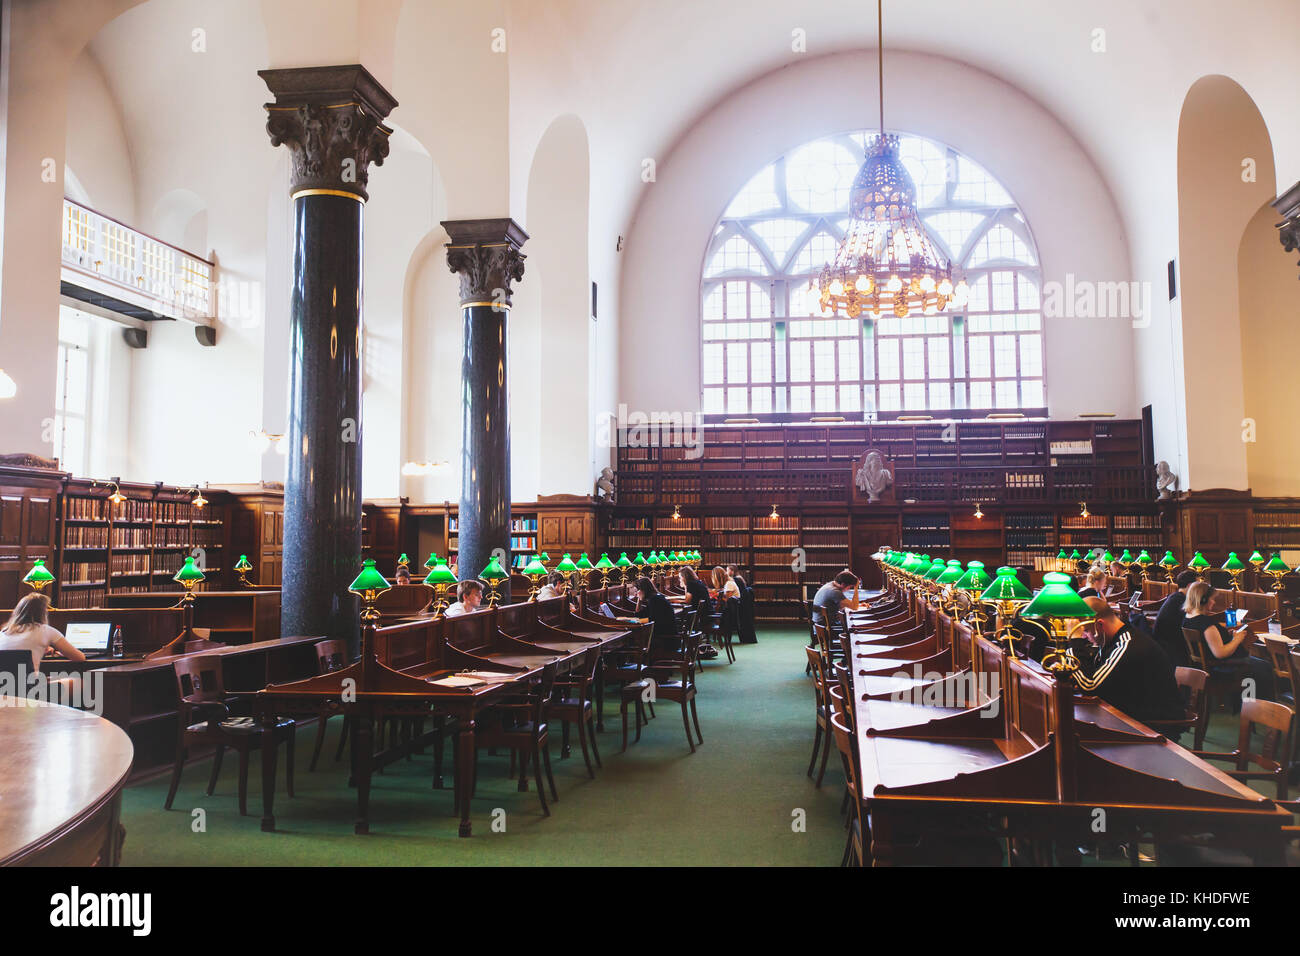 Kopenhagen, Dänemark - Juni 08 2017 - Studenten studieren in schönem Interieur der Königlichen Bibliothek Stockfoto